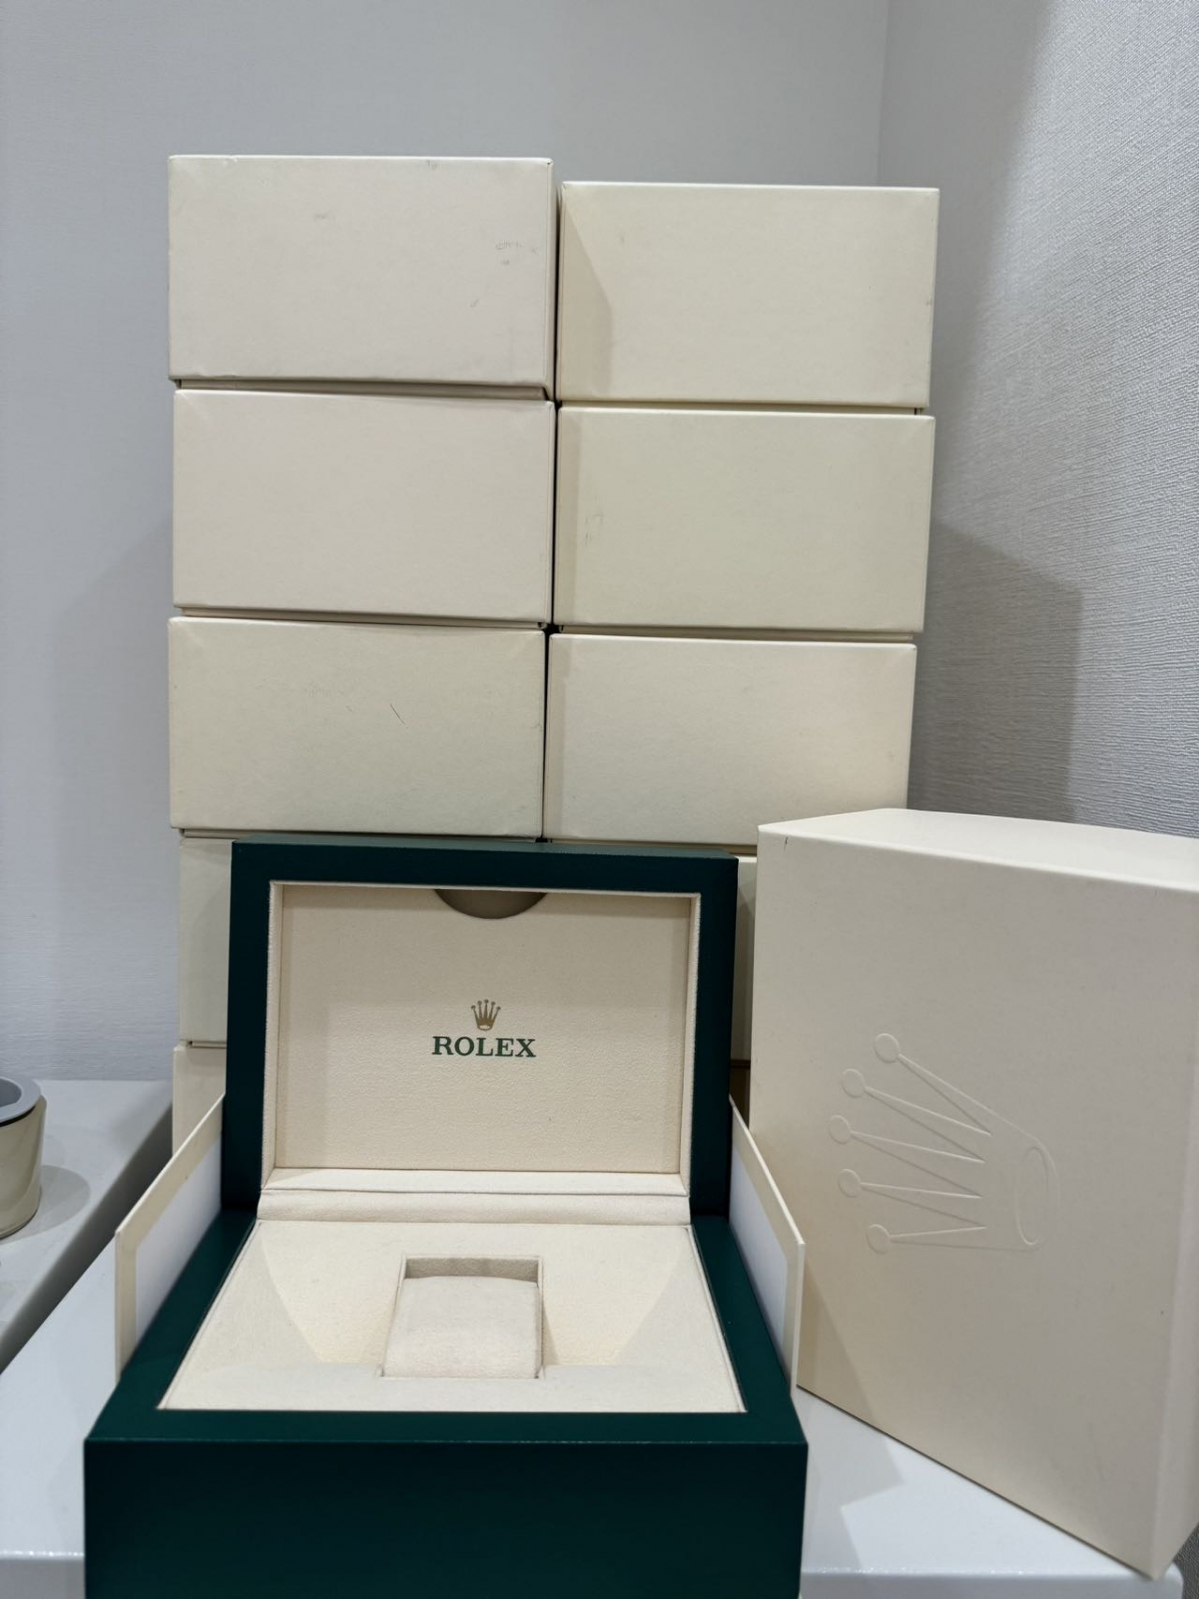 トケマー:ROLEX BOX ロレックス 箱 21個 全サイズ 展示ボックス